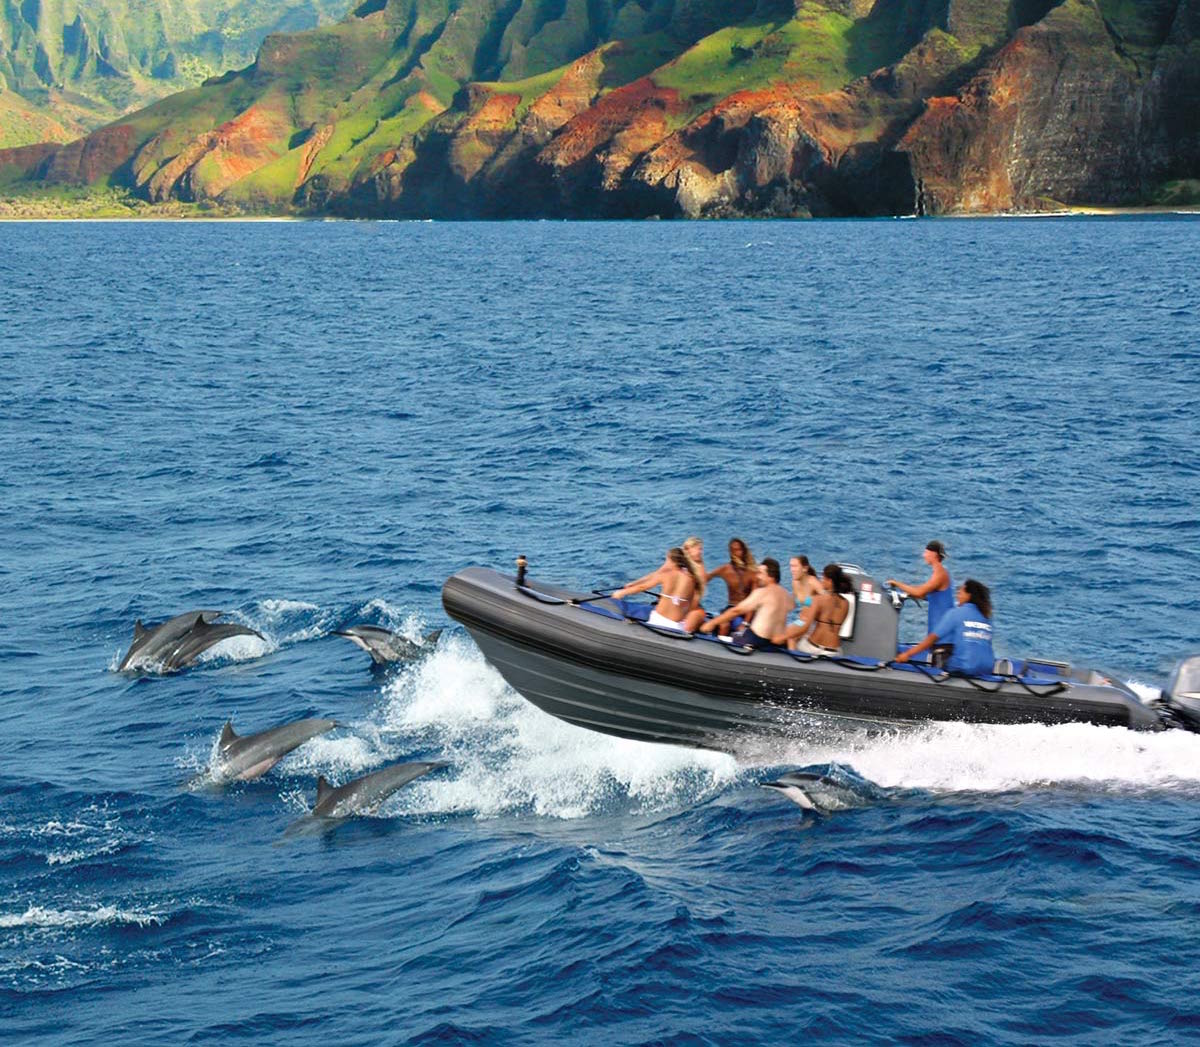 kauai sea tours prices